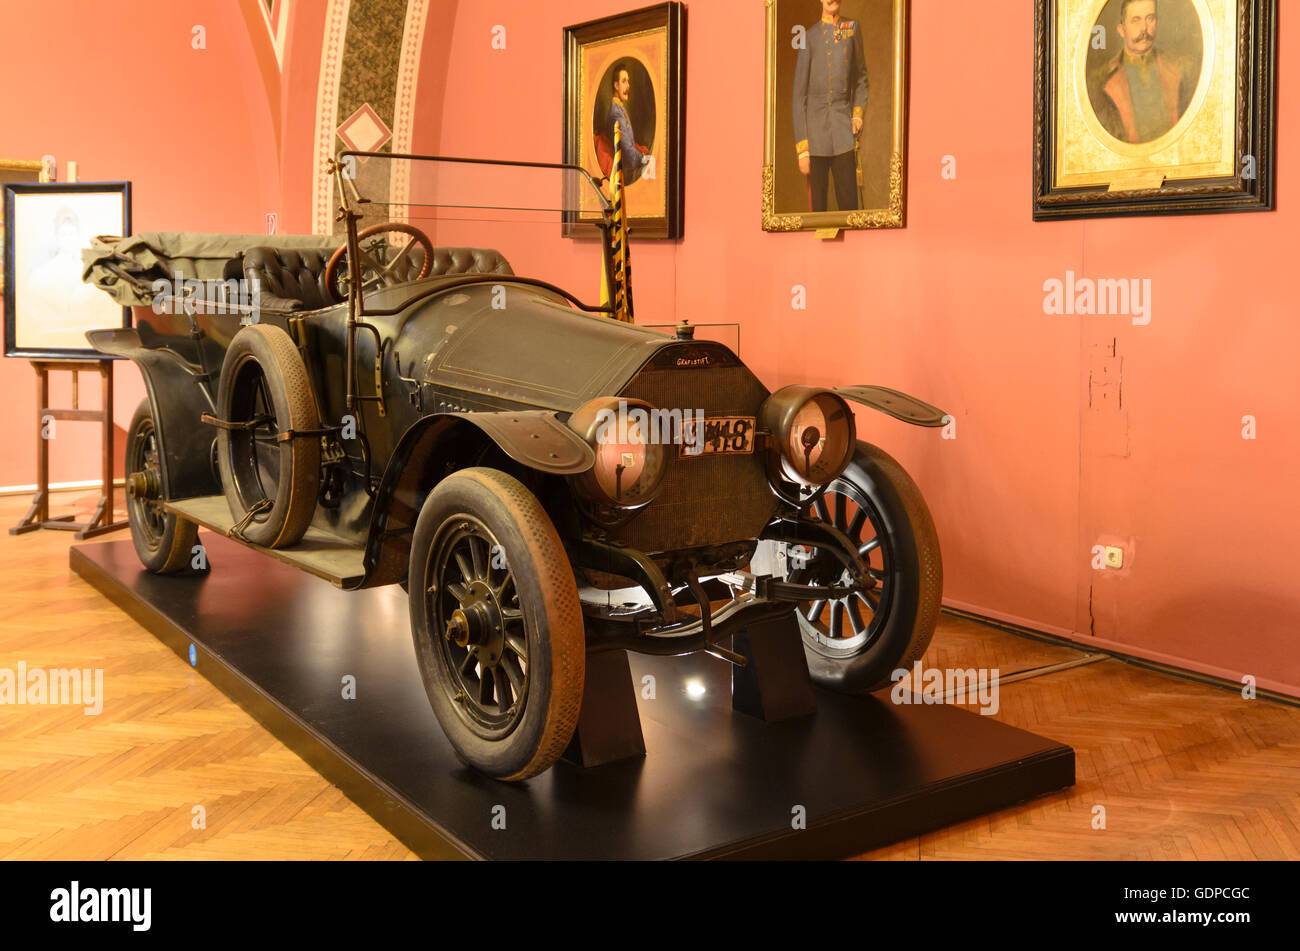 Wien, Wien: Militärmuseum: Passagier Auto der Marke Gräf & Stift, in dem waren getötet Erzherzog Franz Ferdinand von Austr Stockfoto